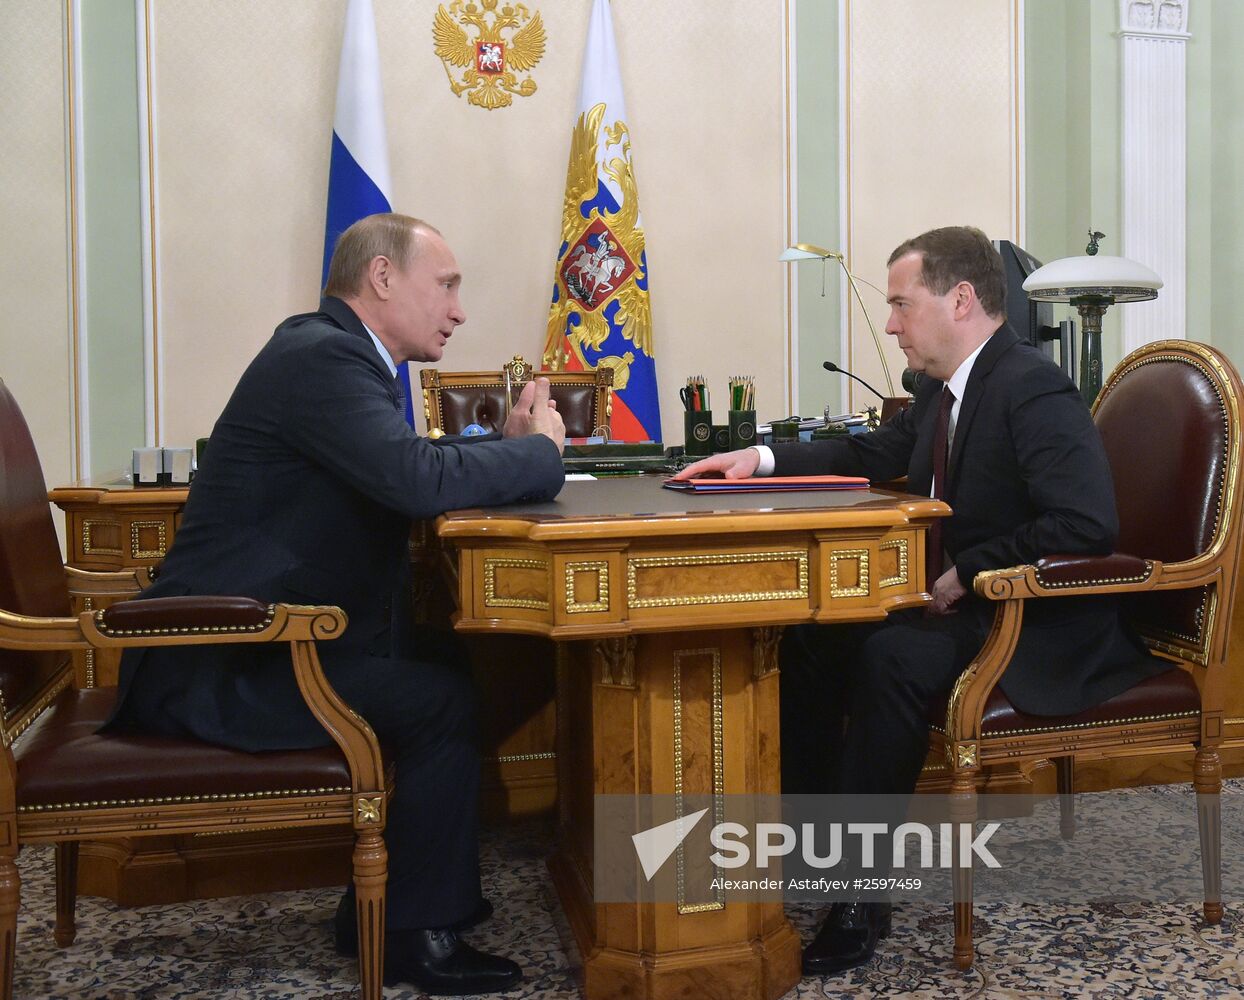 President Vladimir Putin meets with Prime Minister Dmitry Medvedev